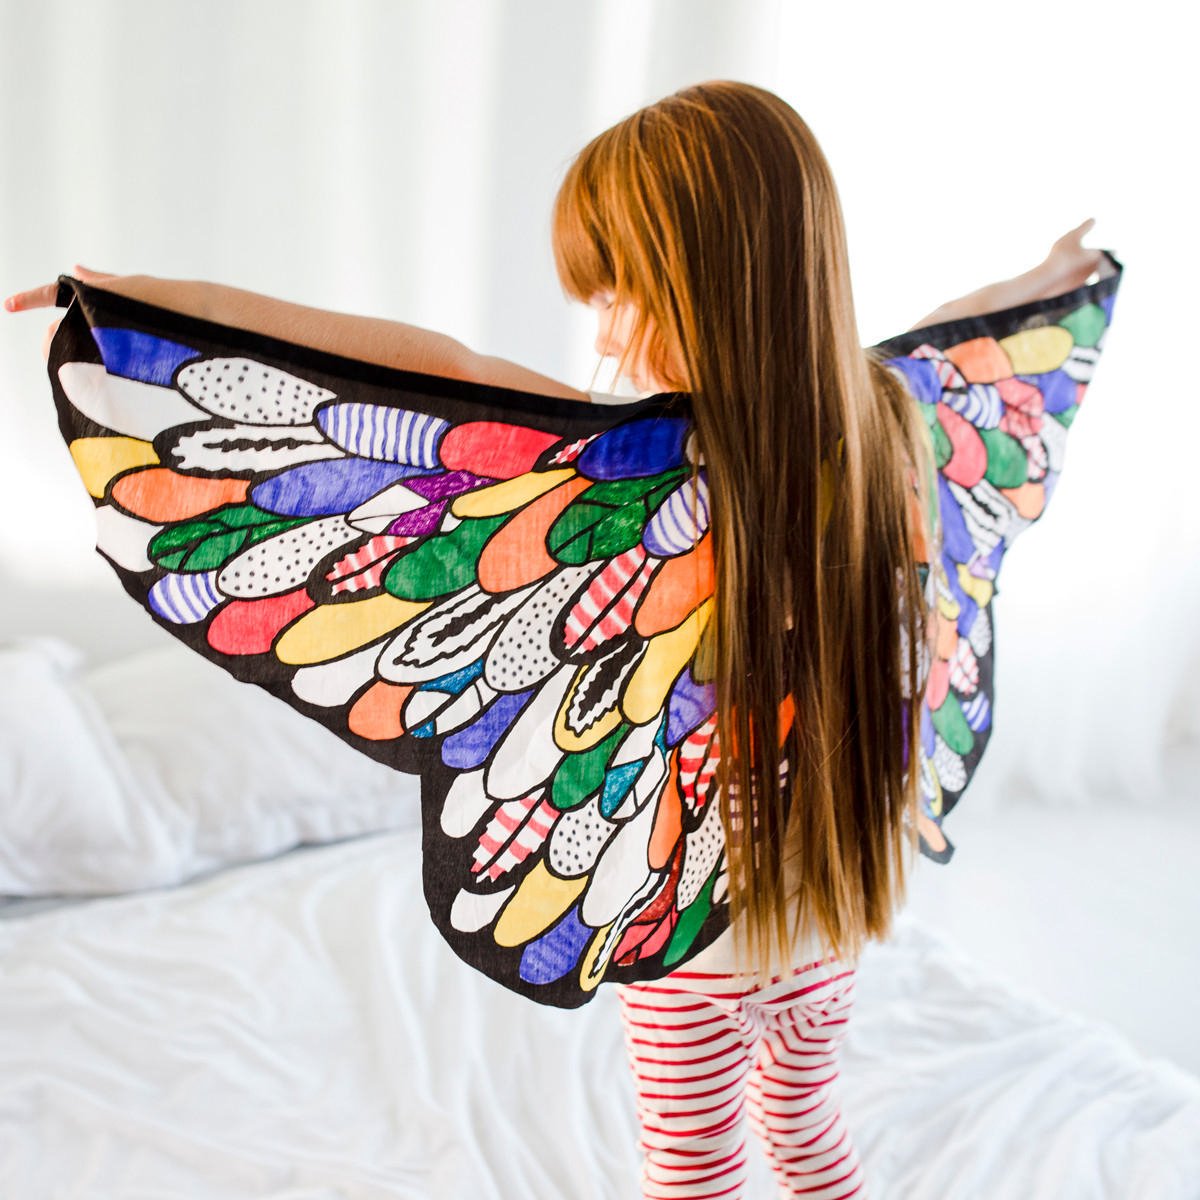 Крылья купить недорого. Крылышки бабочки из ткани. Крылышки для детей. Крылья из ткани для детей. Криля бабочки из ткани.